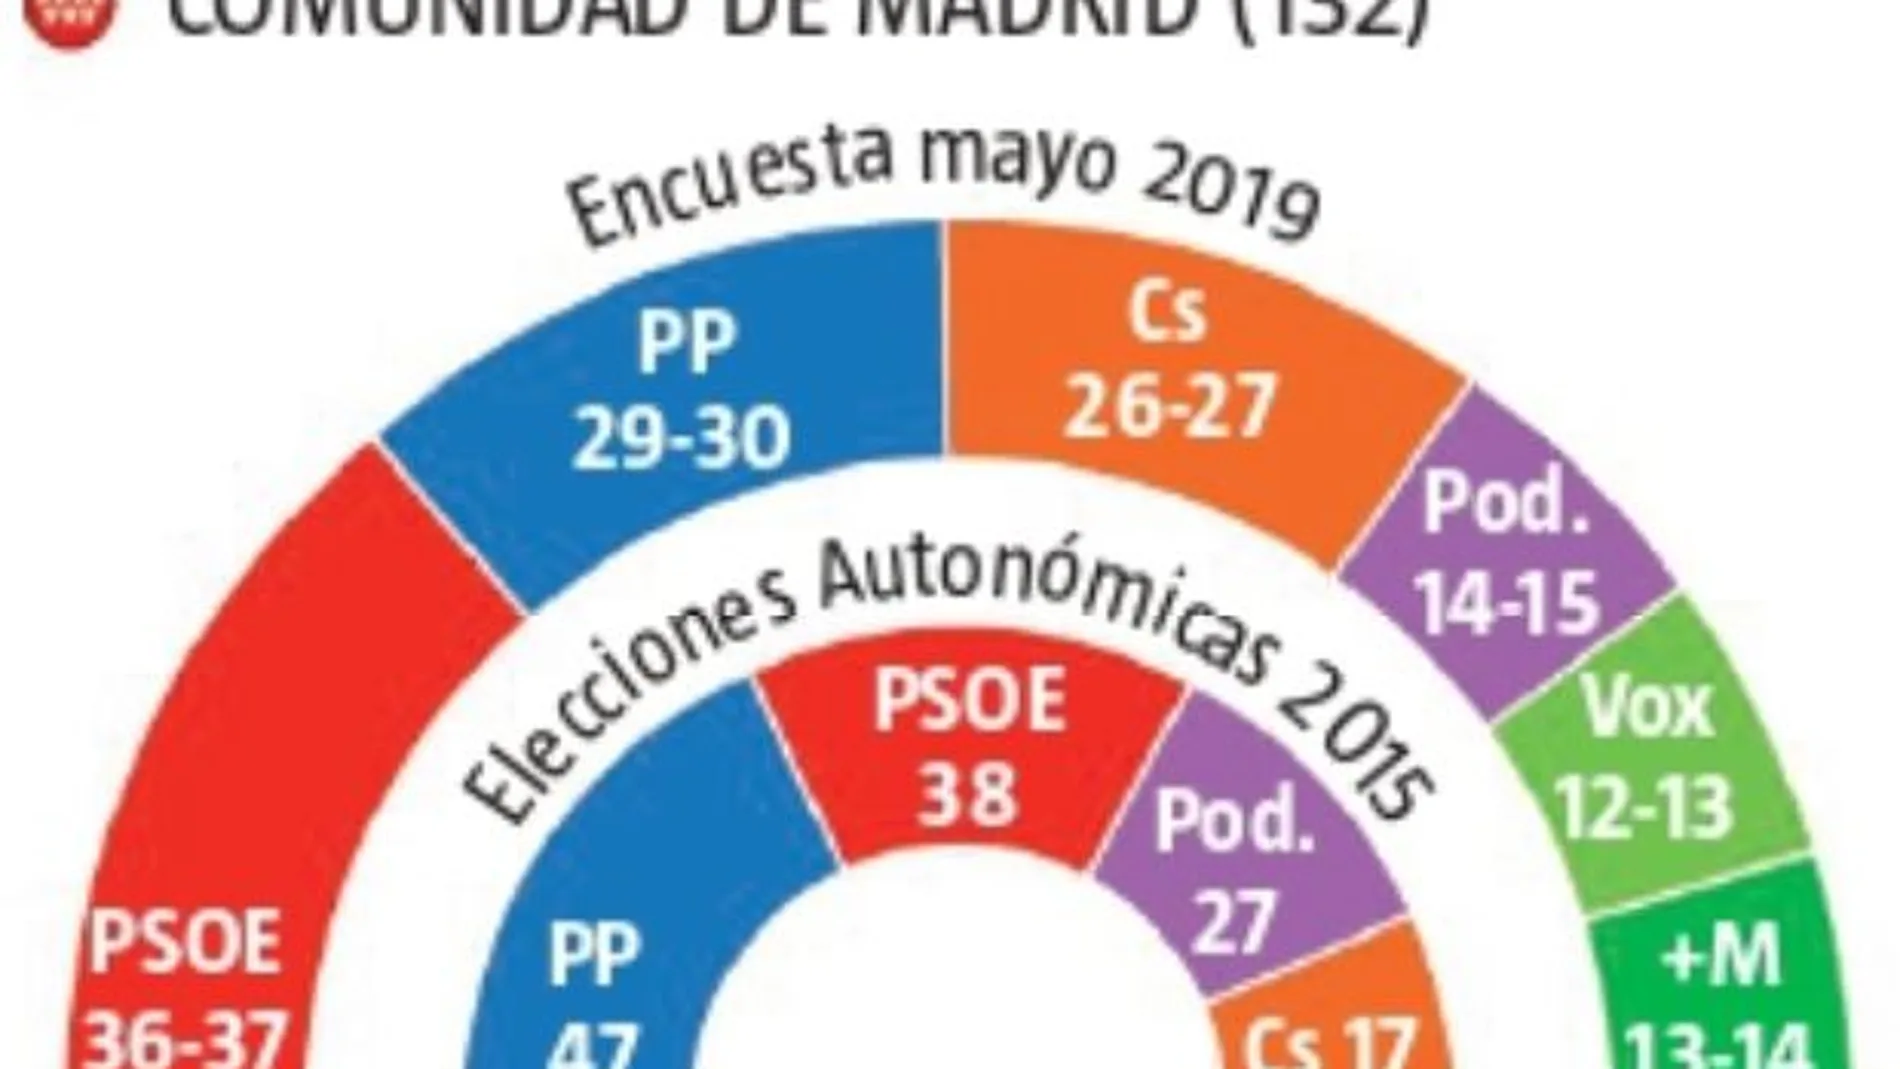 El PSOE gana en Madrid, pero la suma de PP, Cs y Vox lo aleja de Sol